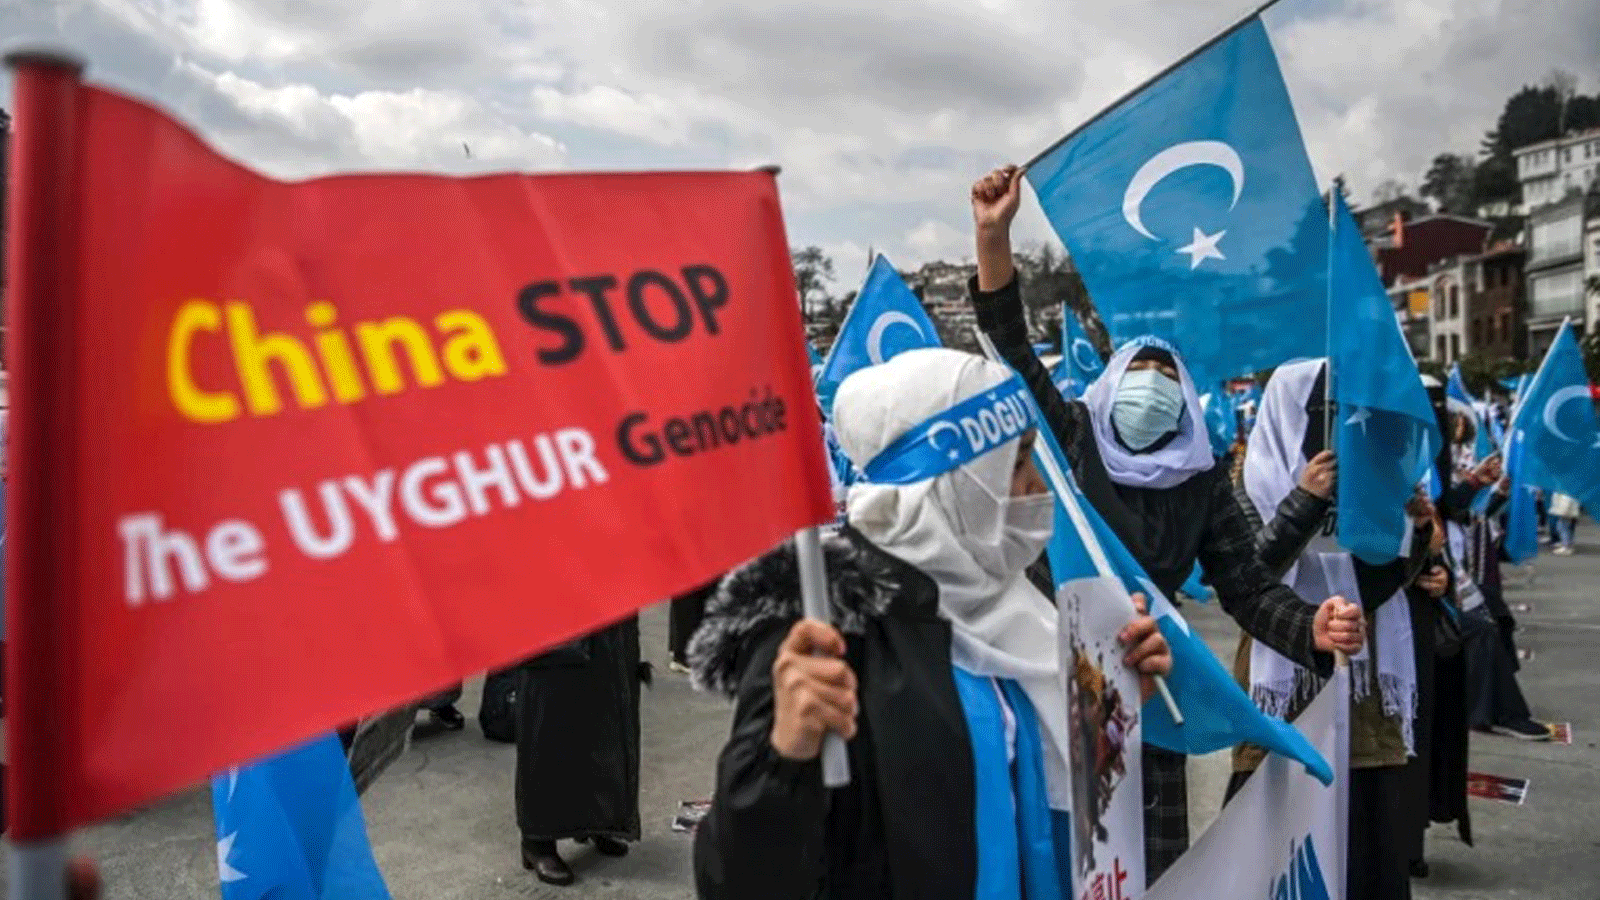 نساء من الأويغور يتجمعون خارج القنصلية الصينية في اسطنبول للتنديد بالانتهاكات المزعومة لحقوق الأويغور في شينجيانغ